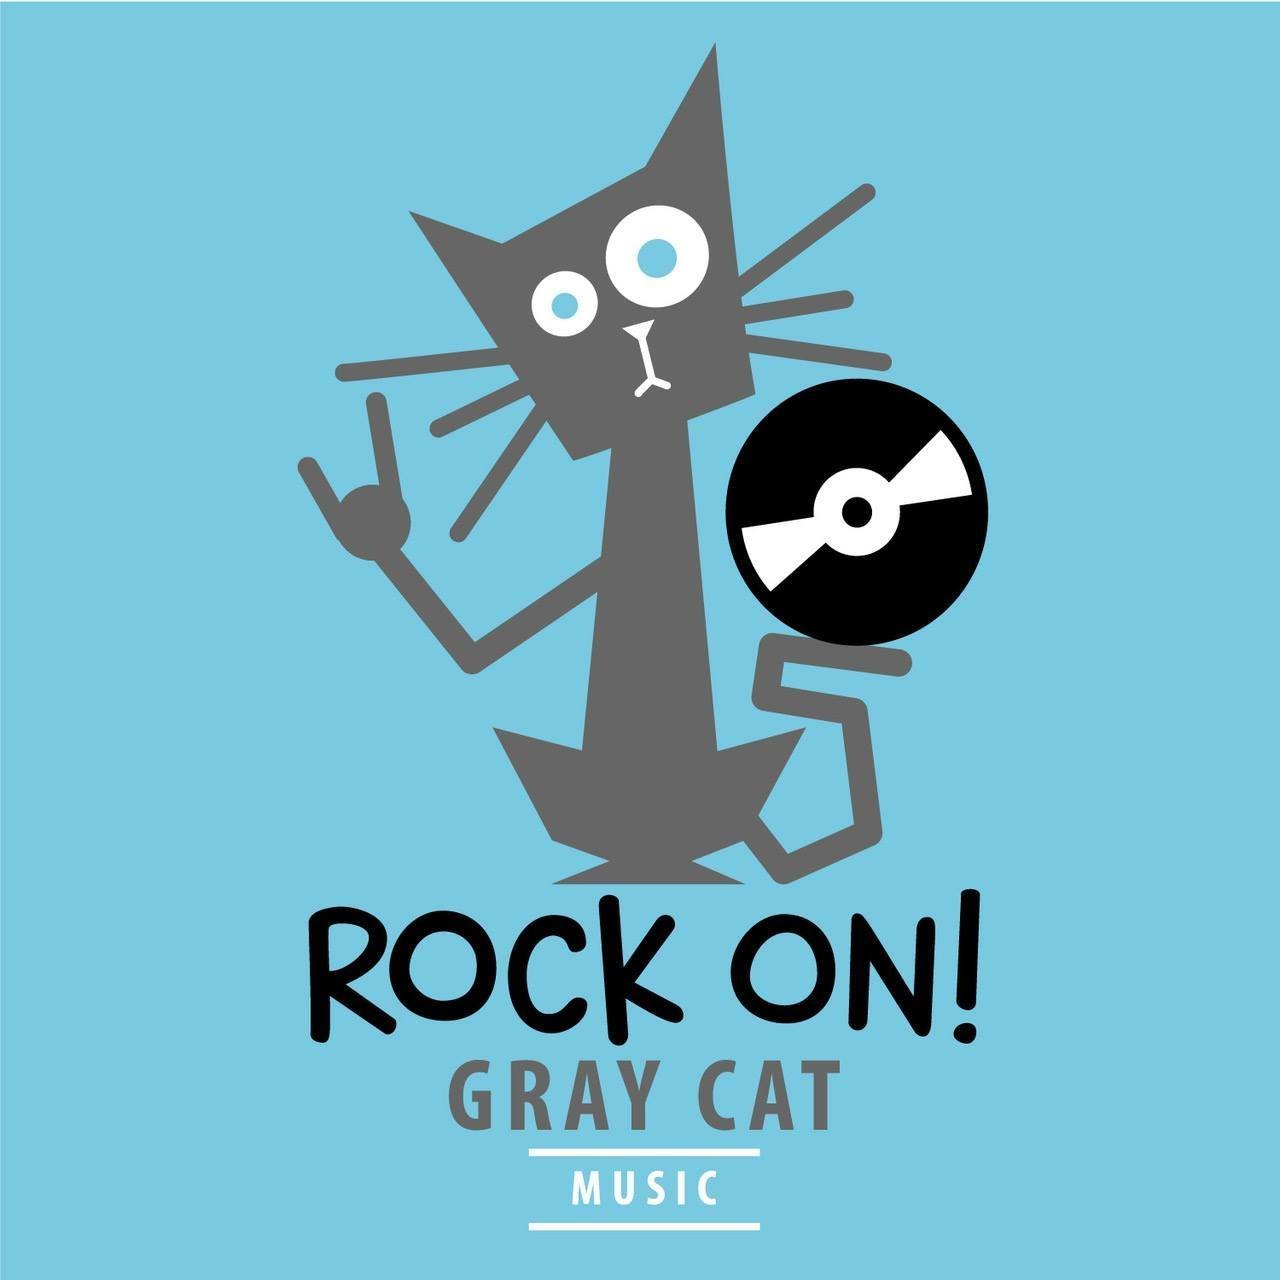 Gray Cat Music